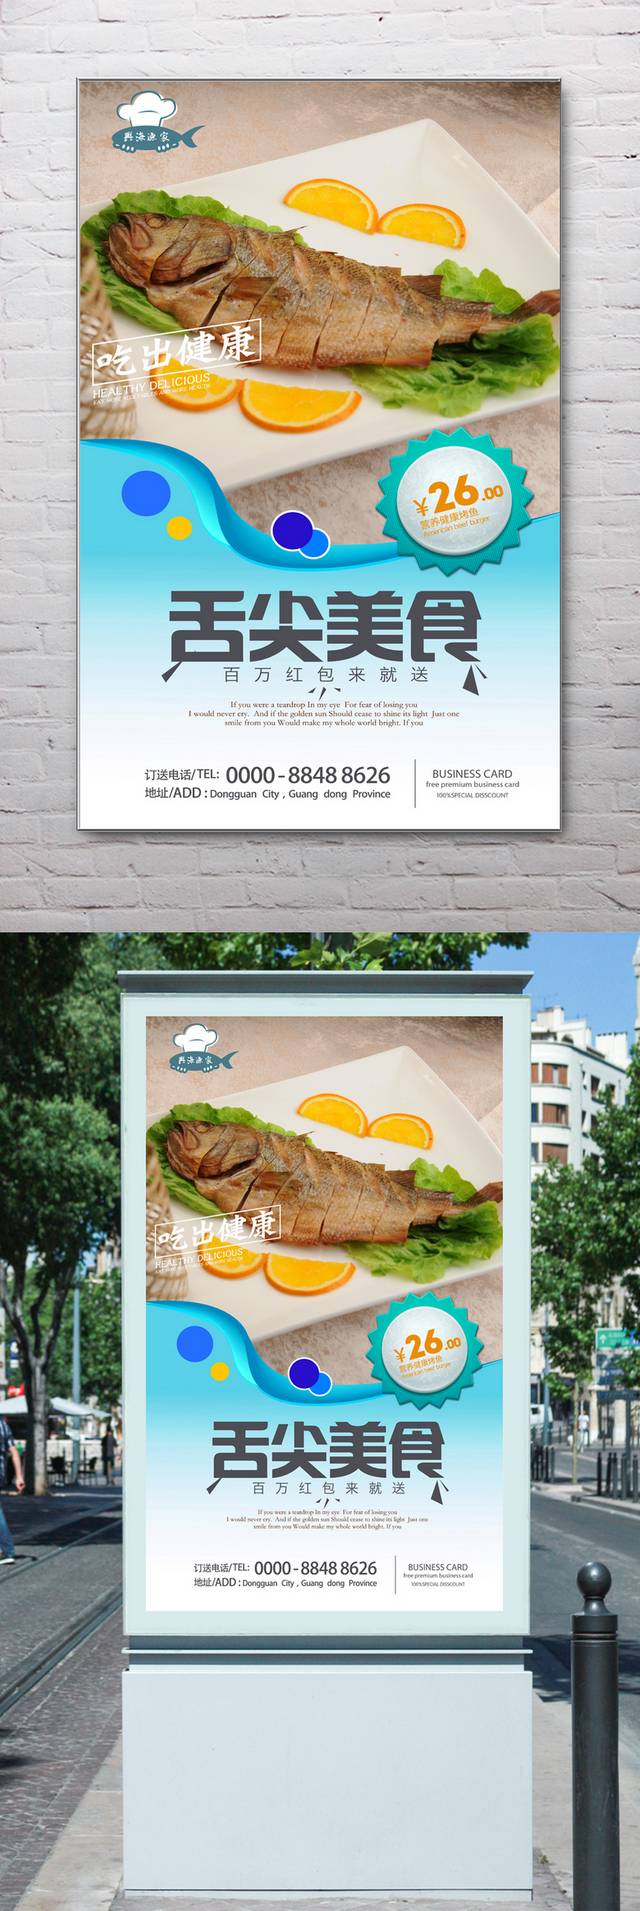 高档烤鱼宣传海报设计